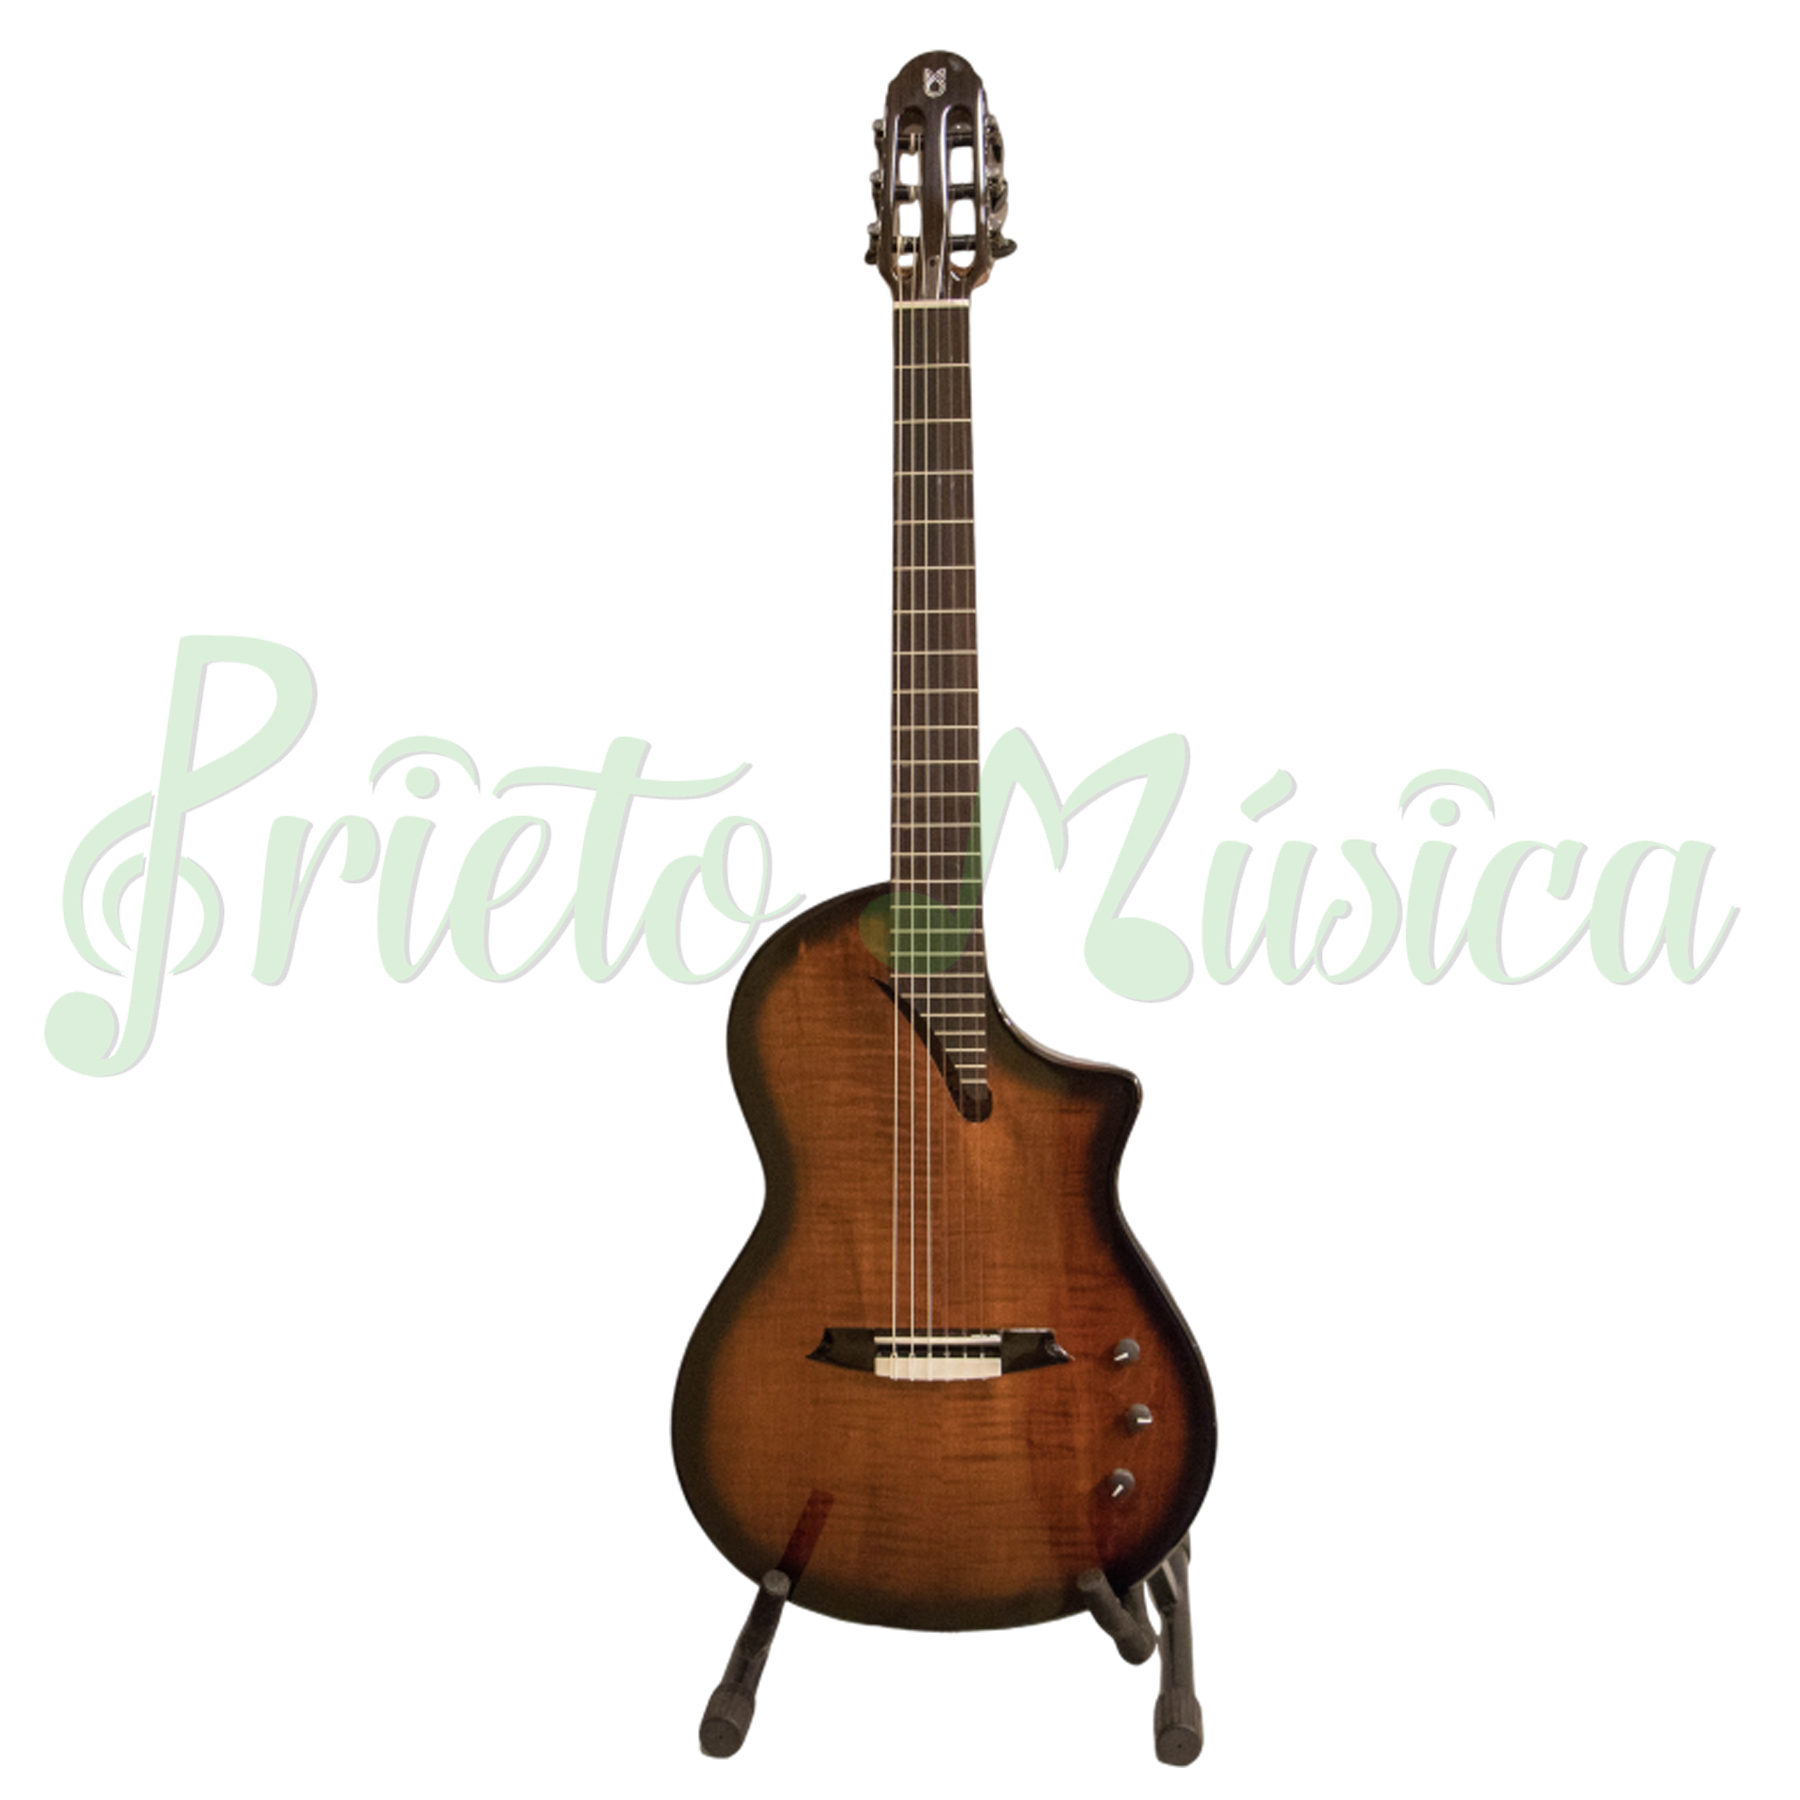 Compra guitarra de concierto Martnez Hispania al mejor precio en Prieto Msica